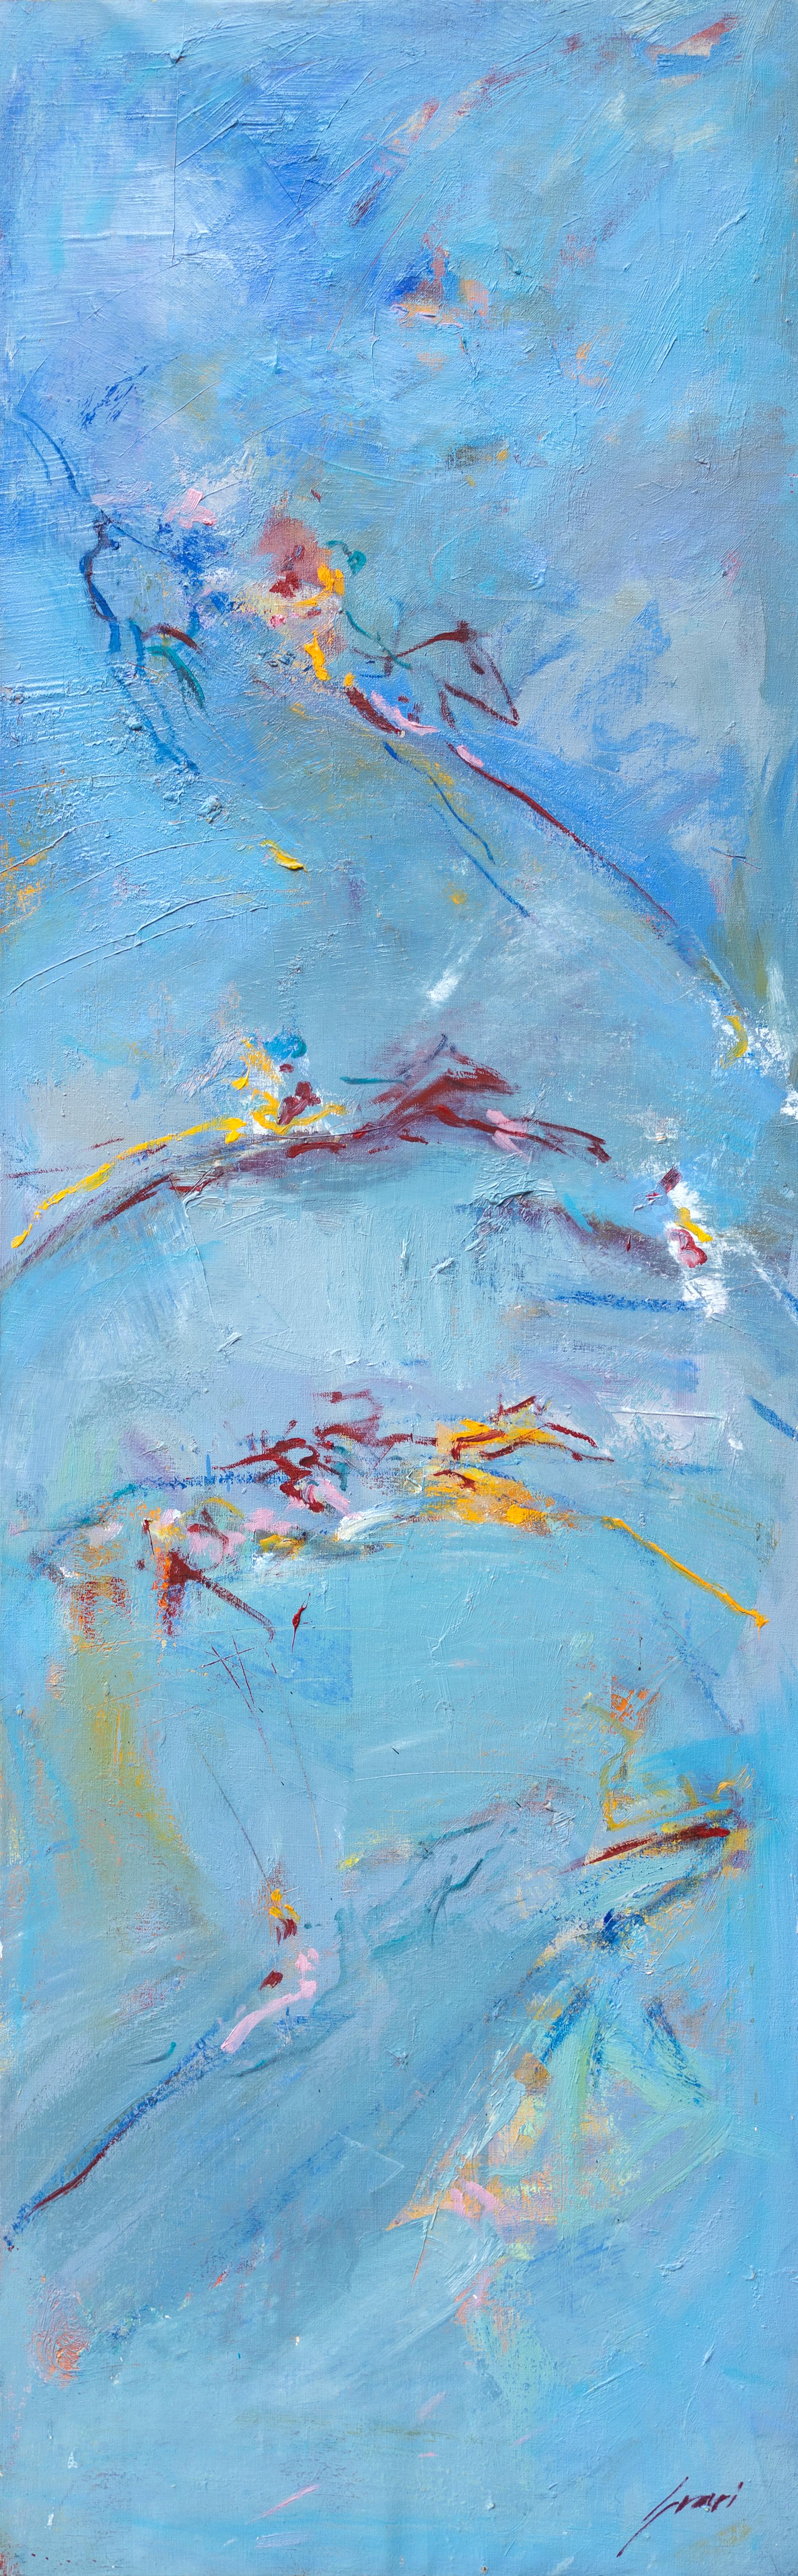 Dieses abstrakte expressionistische Werk des mallorquinischen Künstlers Pep Suari zeigt anmutig die Bewegung von vier Pferden vor einem himmelblauen Hintergrund. 
Von Pep Suari
57.5" x 18.25"  Acryl auf Leinwand